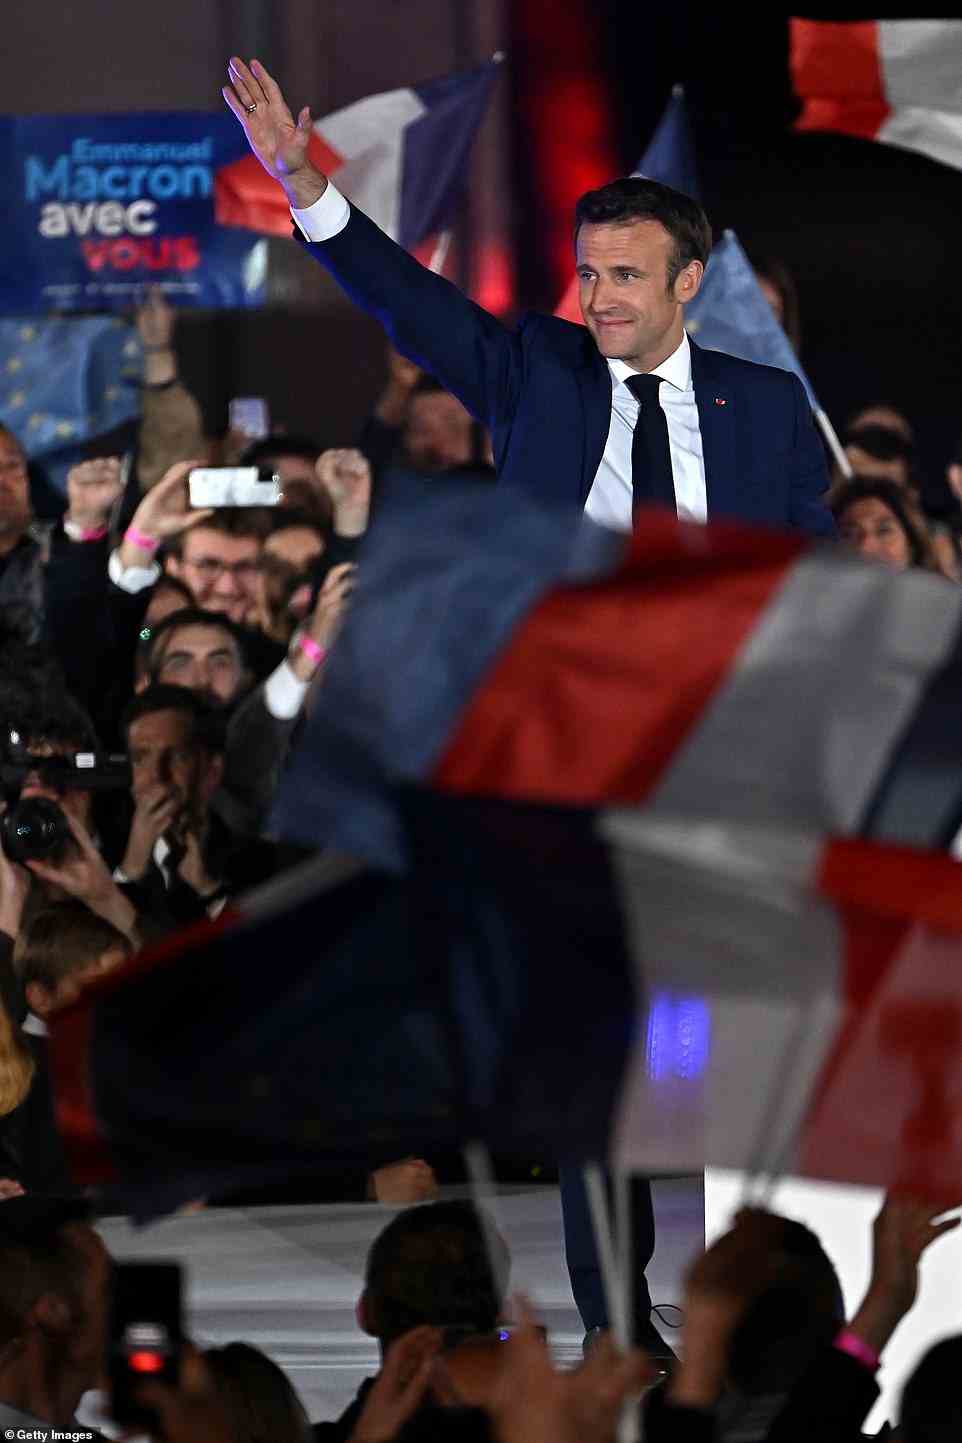 Frankreichs zentristischer amtierender Präsident Emmanuel Macron schlägt seine rechtsextreme Rivalin Marine Le Pen für eine zweite fünfjährige Amtszeit als Präsidentin